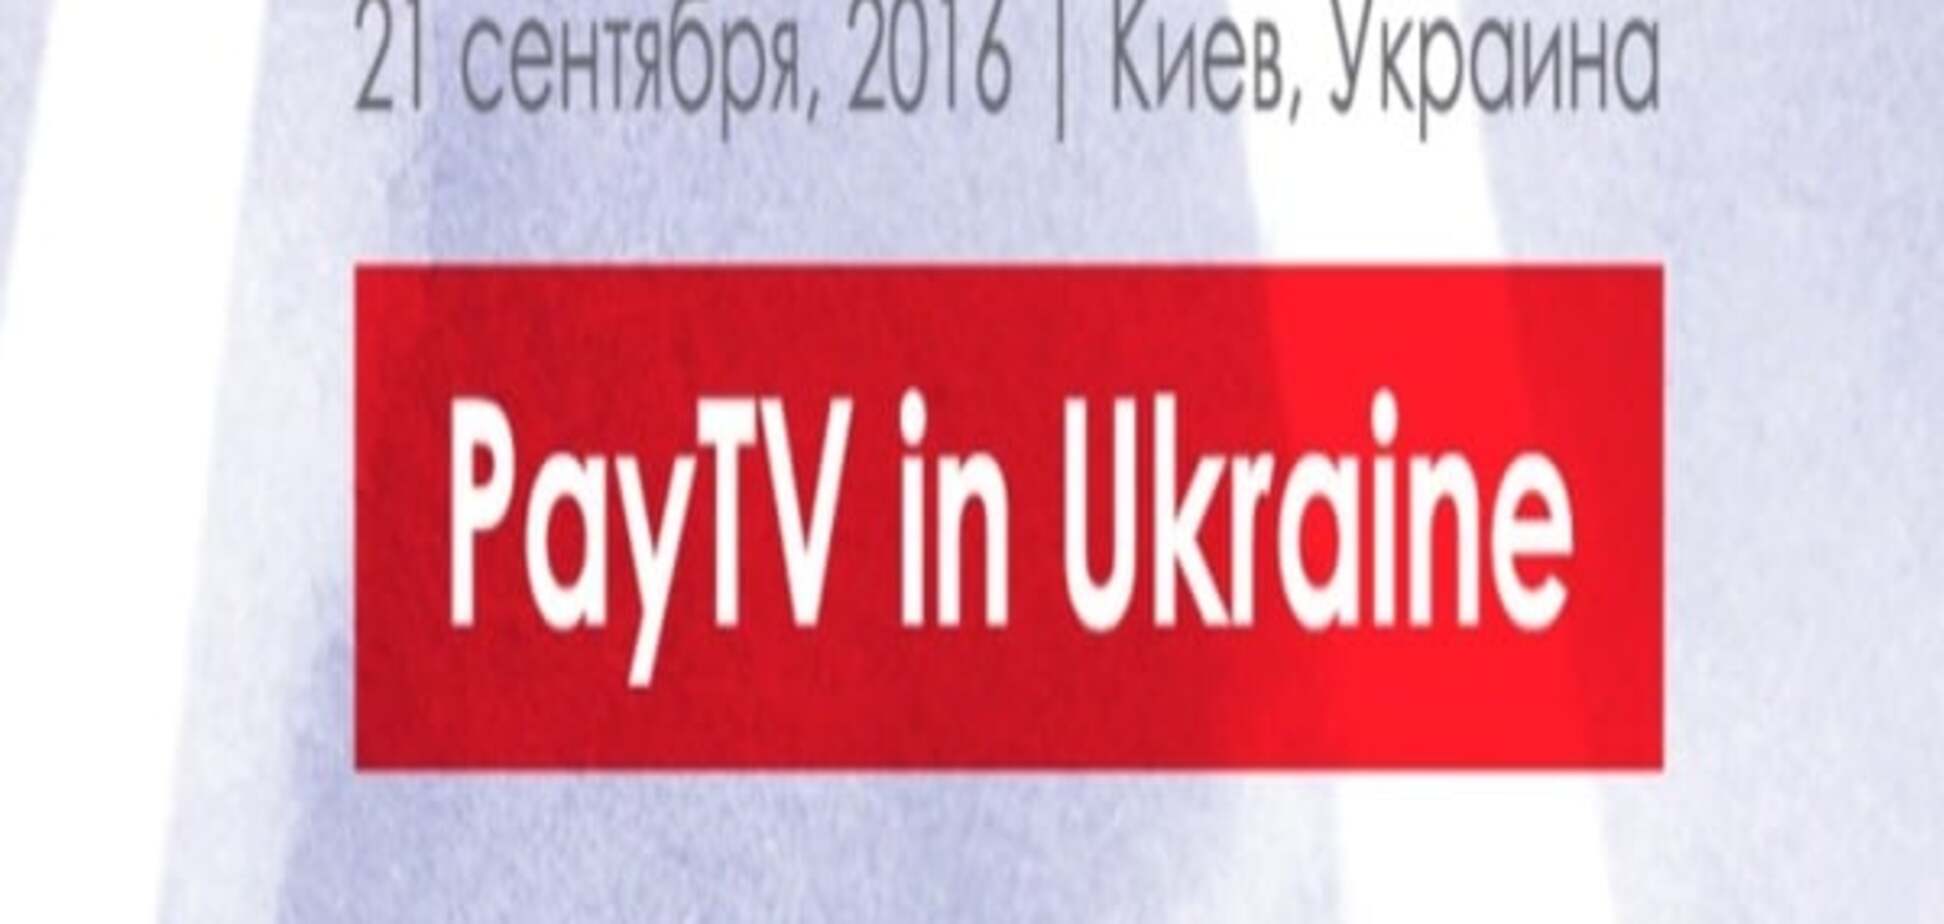 21 сентября  2016 состоится конференция Pay TV in Ukraine 2016 в рамках KIEV MEDIA WEEK